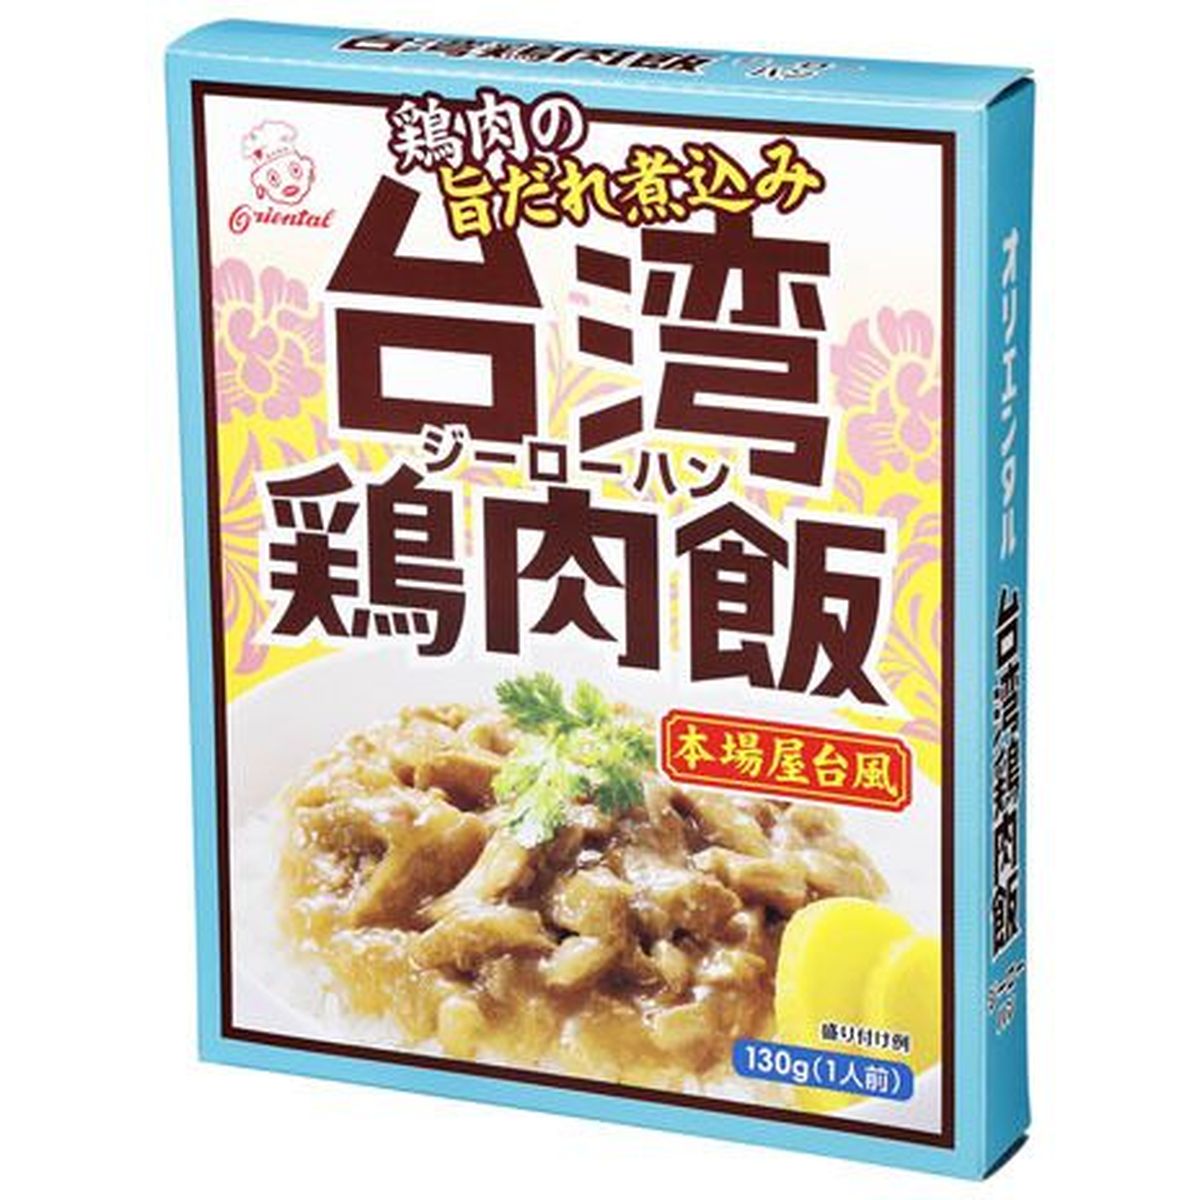 【5個入リ】オリエンタル 台湾鶏肉飯 130g